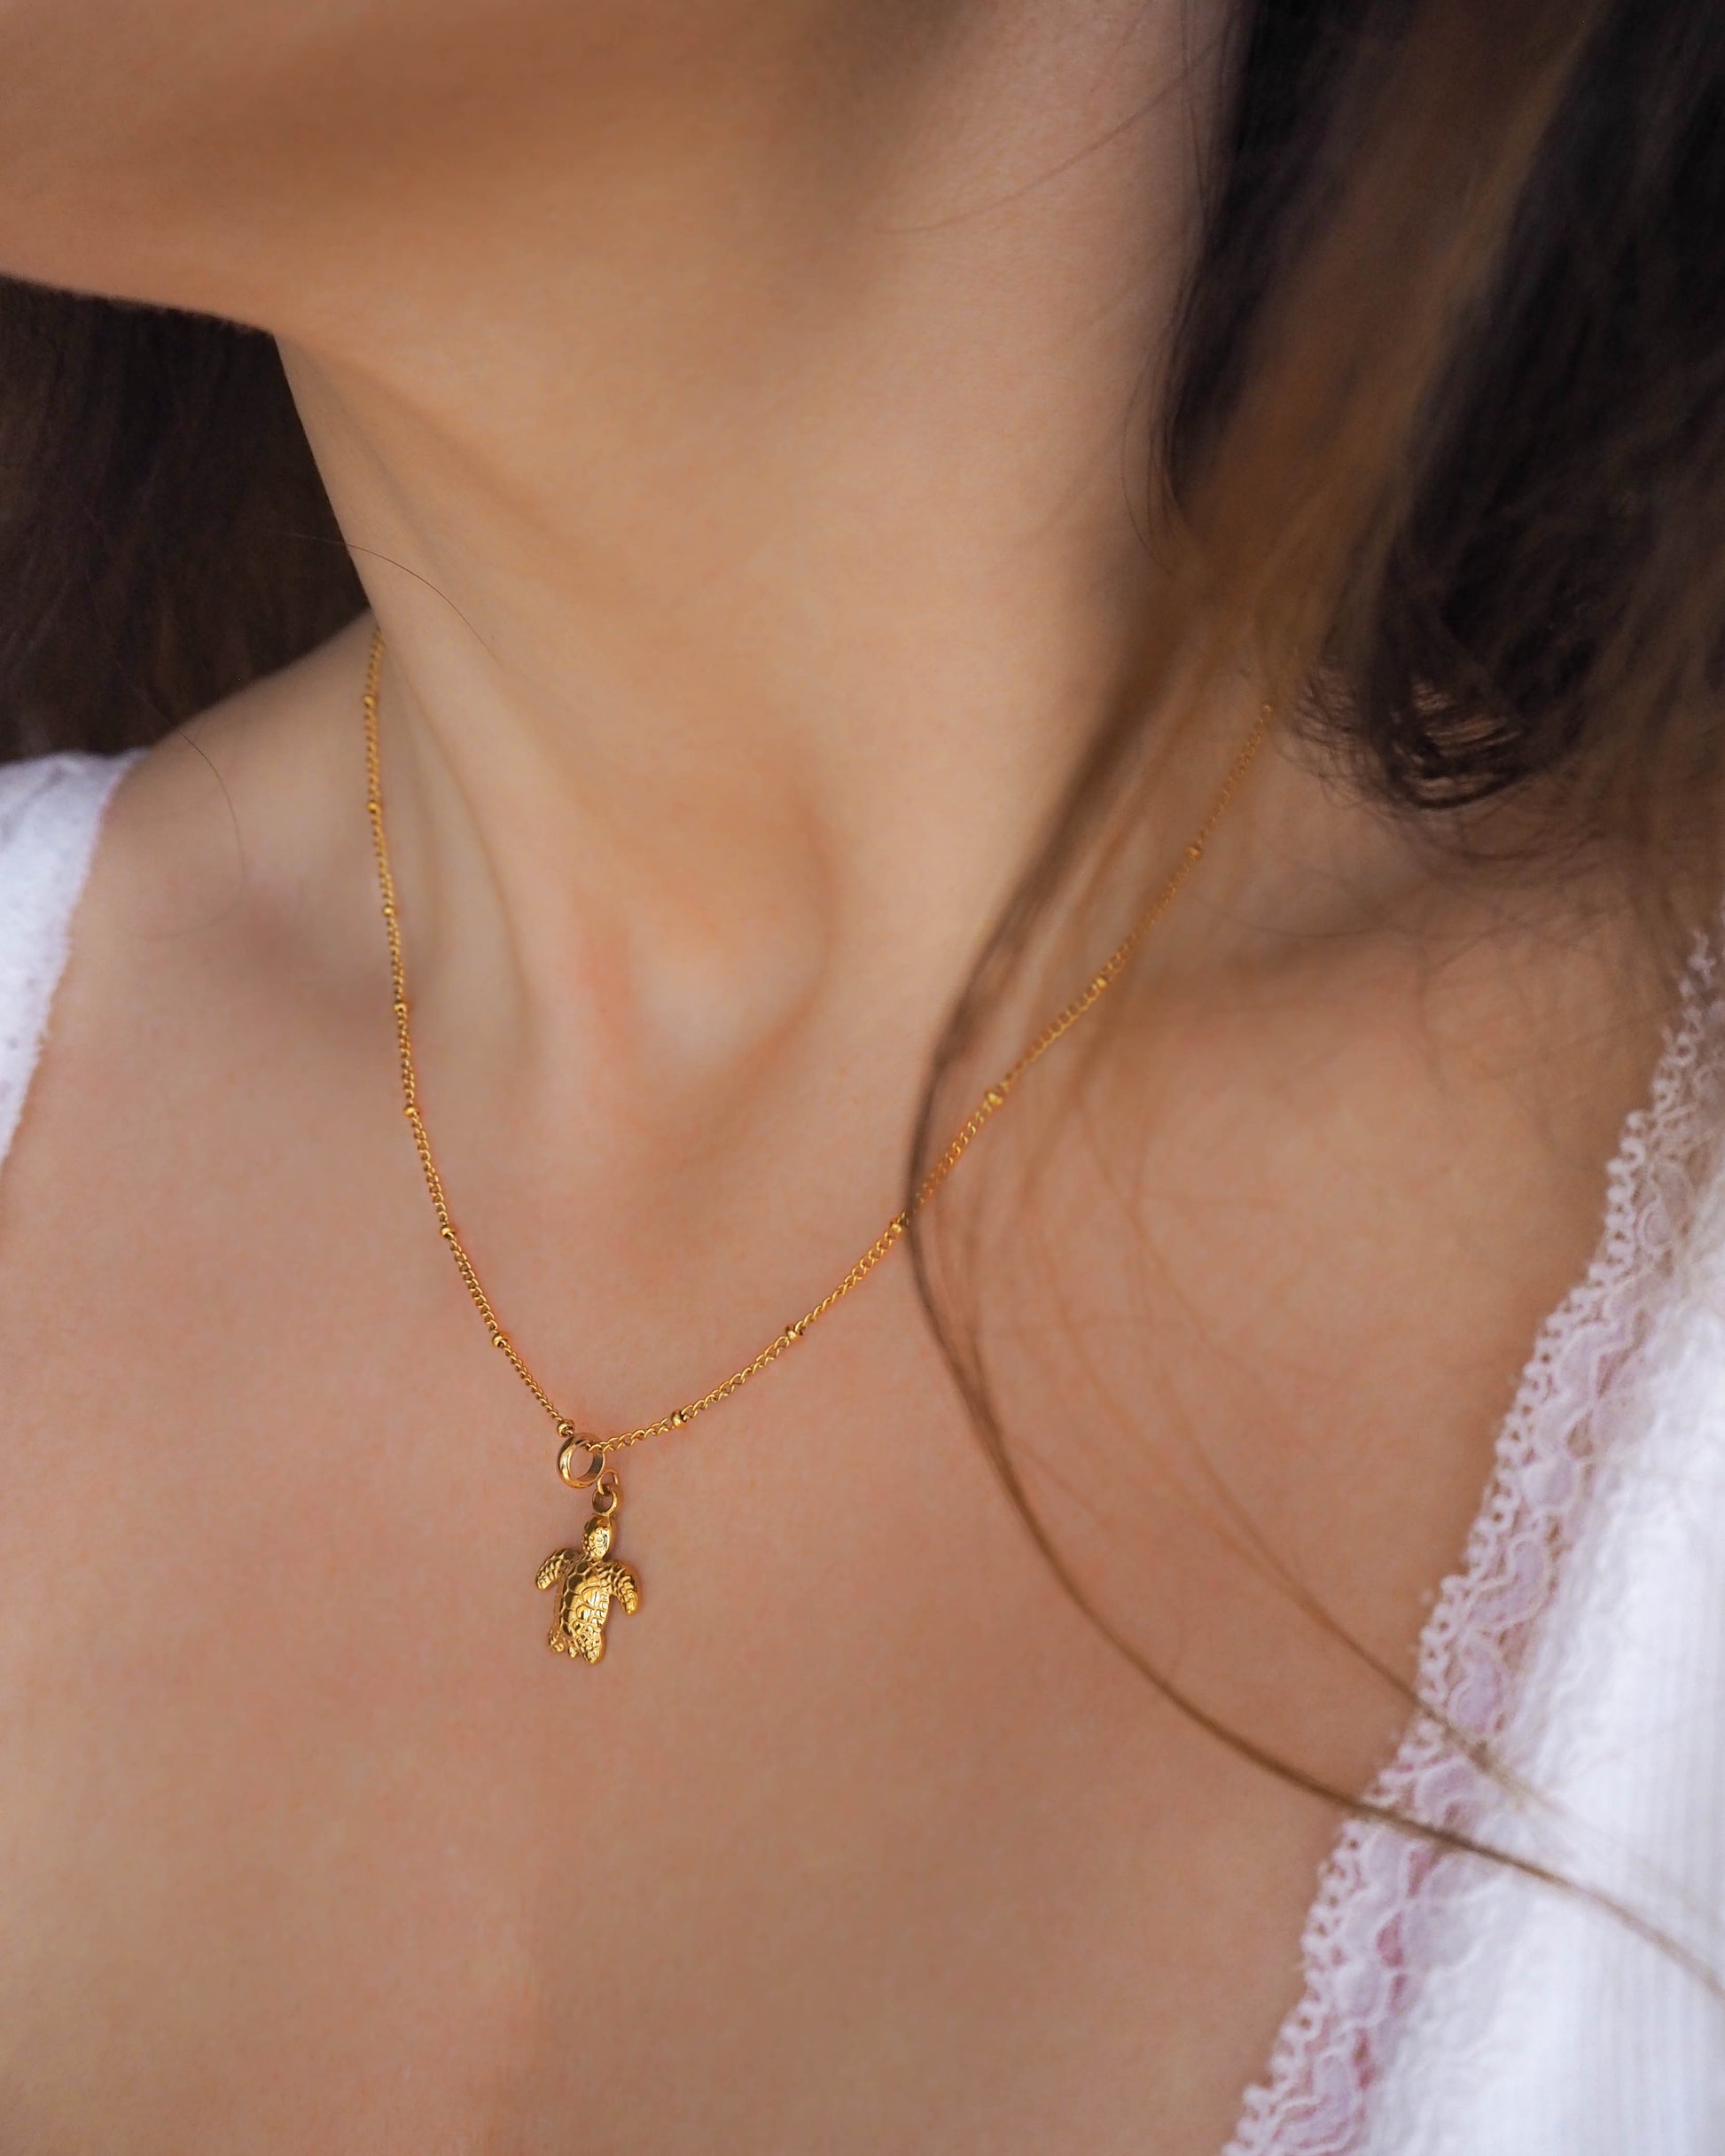 Model wearing Gold Turtle Necklace hypo allergen waterproof stainless steel jewelry 